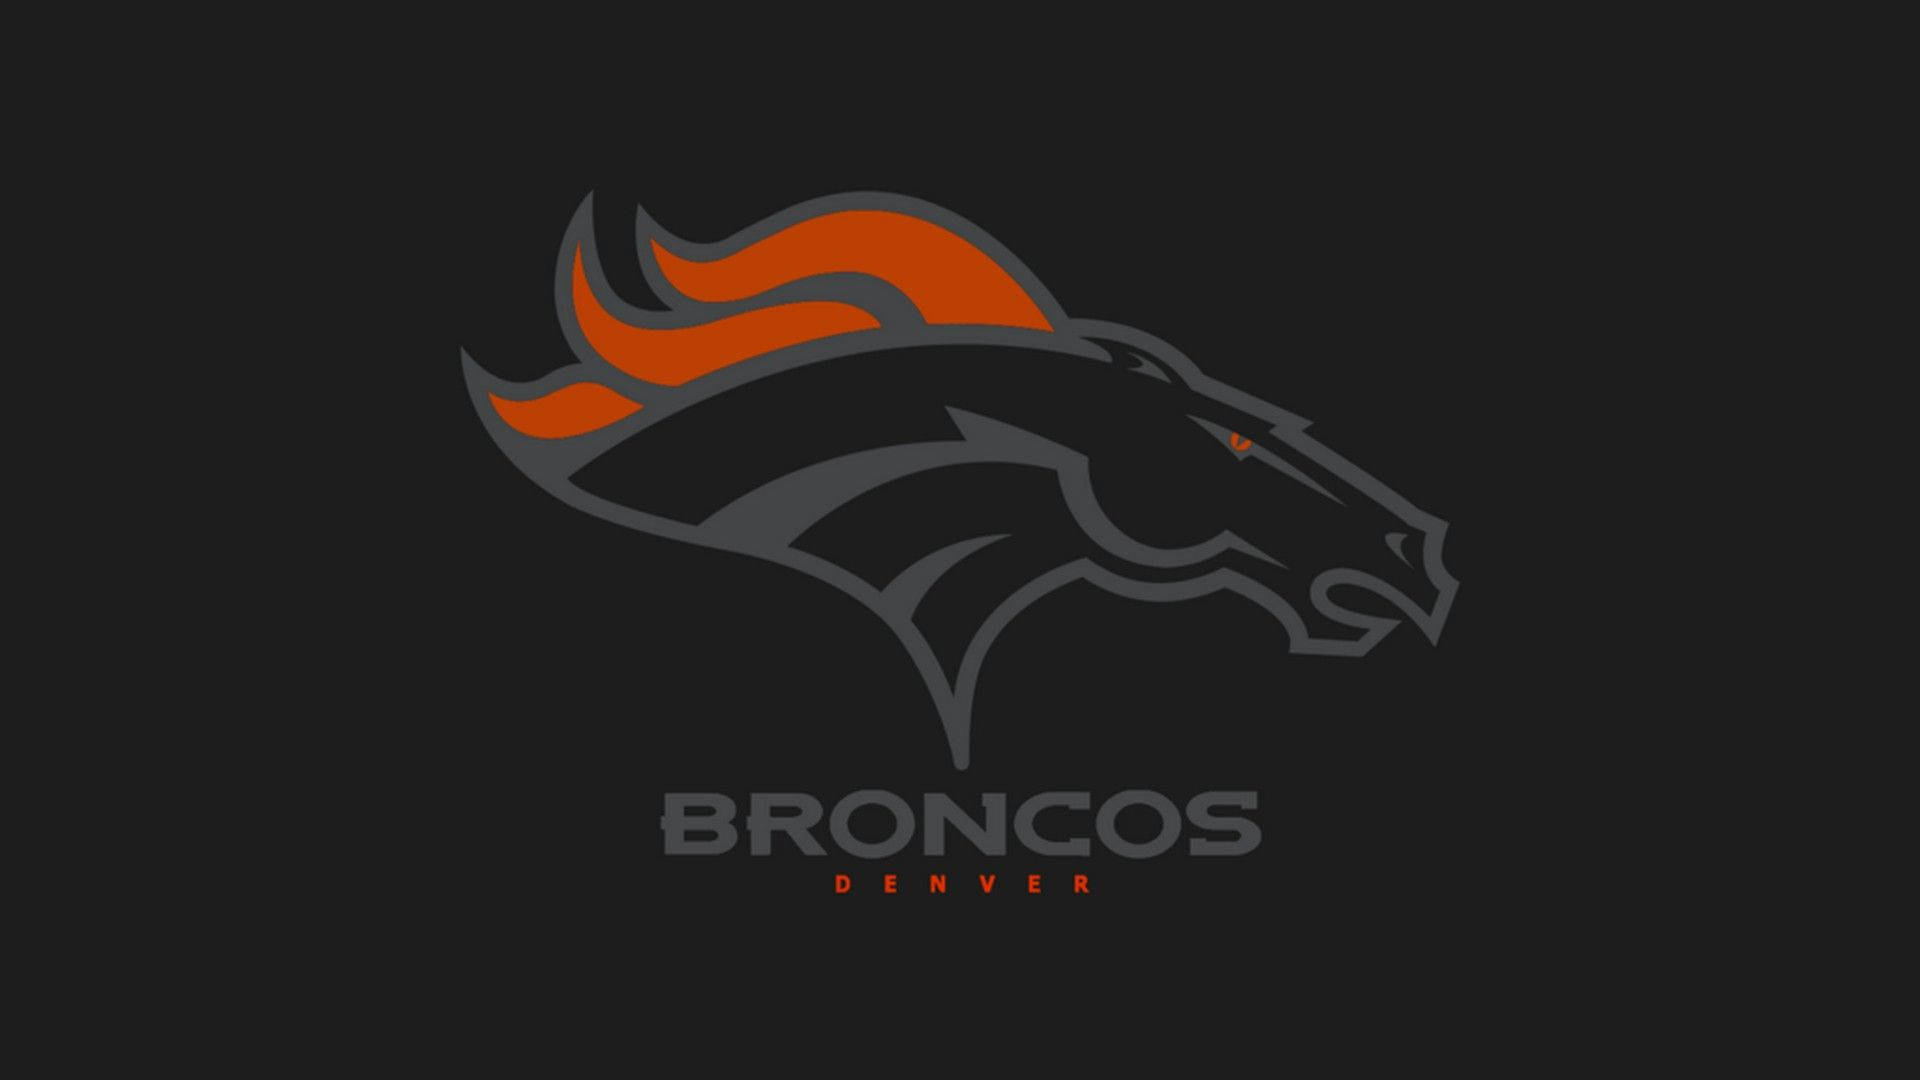 Denver Broncos Black Horse Background